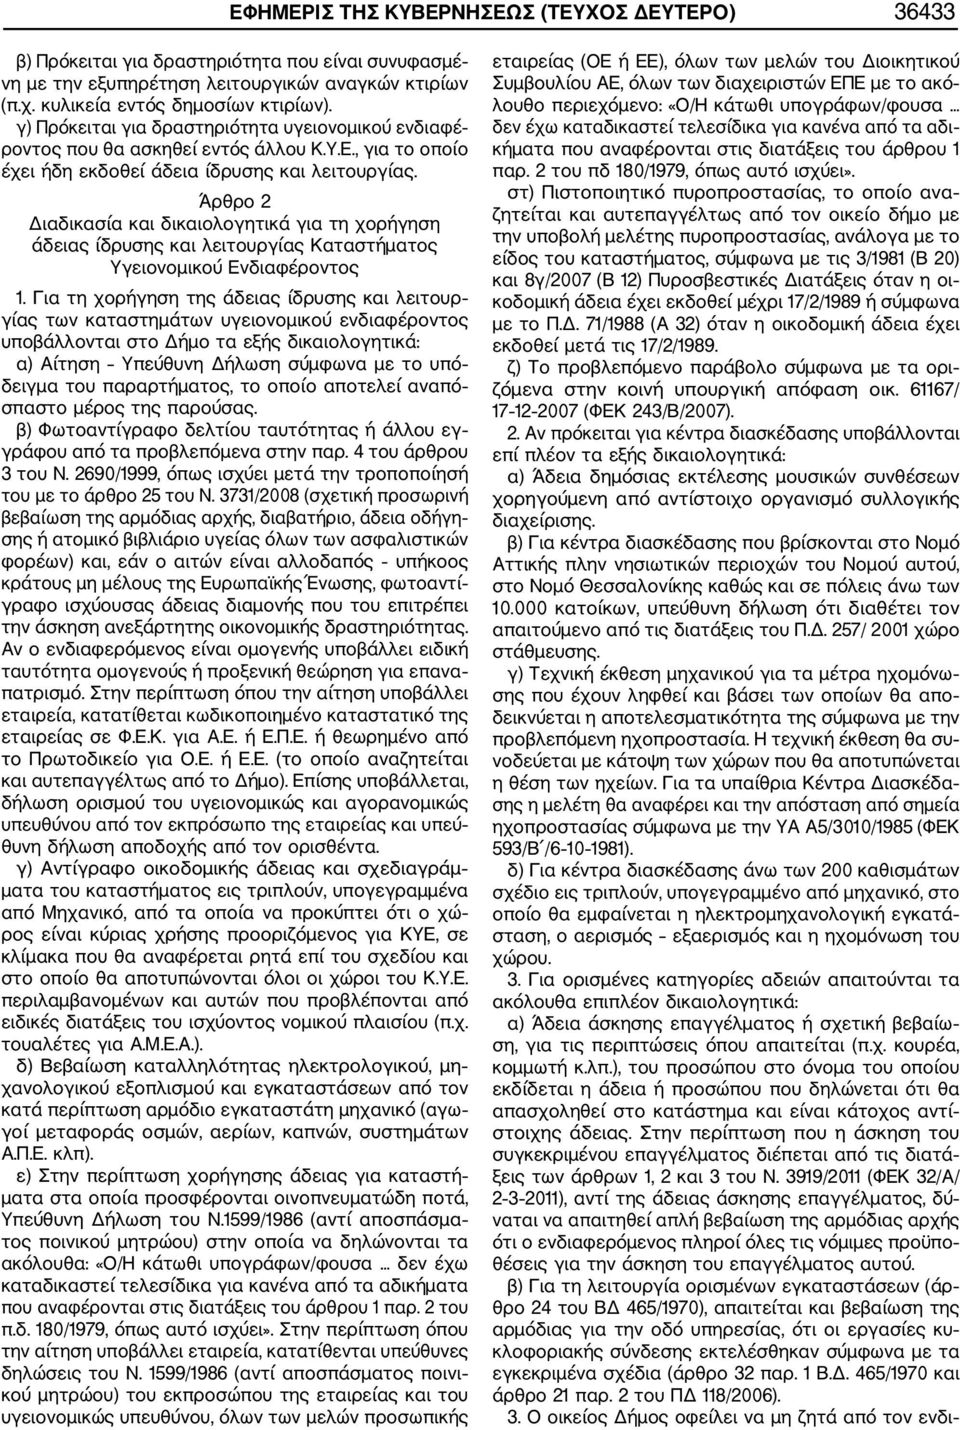 Άρθρο 2 Διαδικασία και δικαιολογητικά για τη χορήγηση άδειας ίδρυσης και λειτουργίας Καταστήματος Υγειονομικού Ενδιαφέροντος 1.